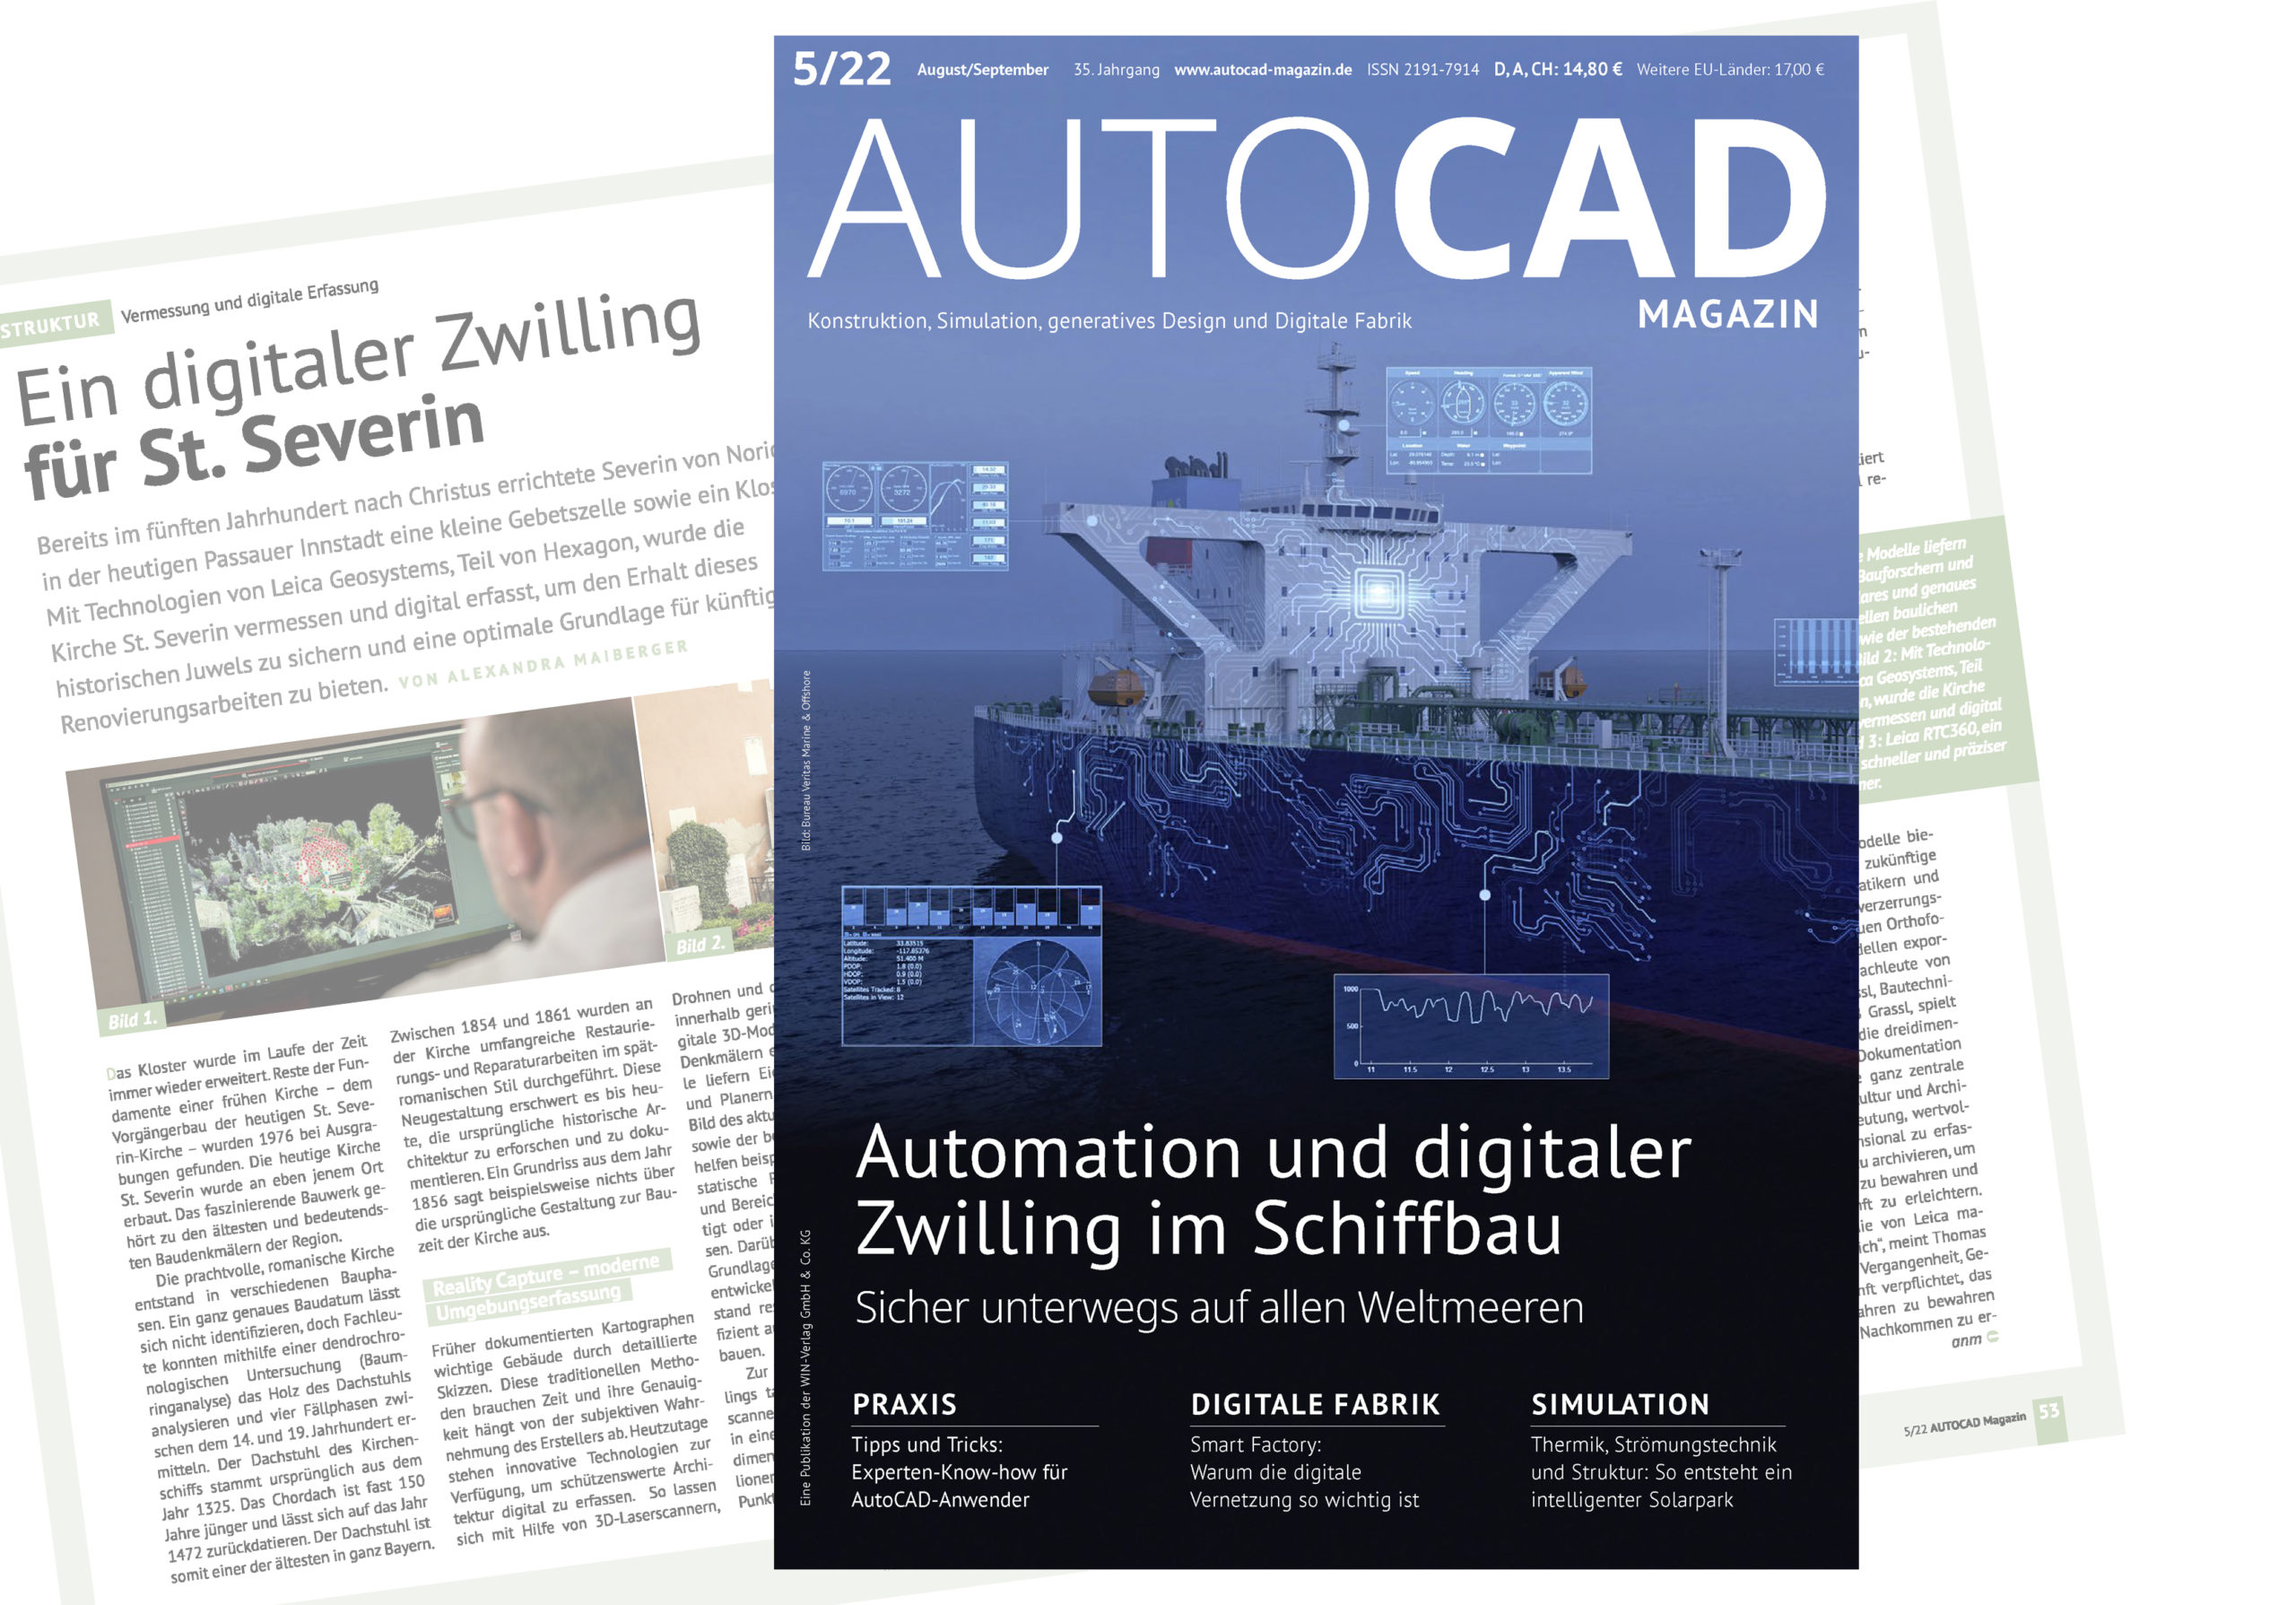 AUTOCAD Magazin 5/22 – Ein digitaler Zwilling für St. Severin